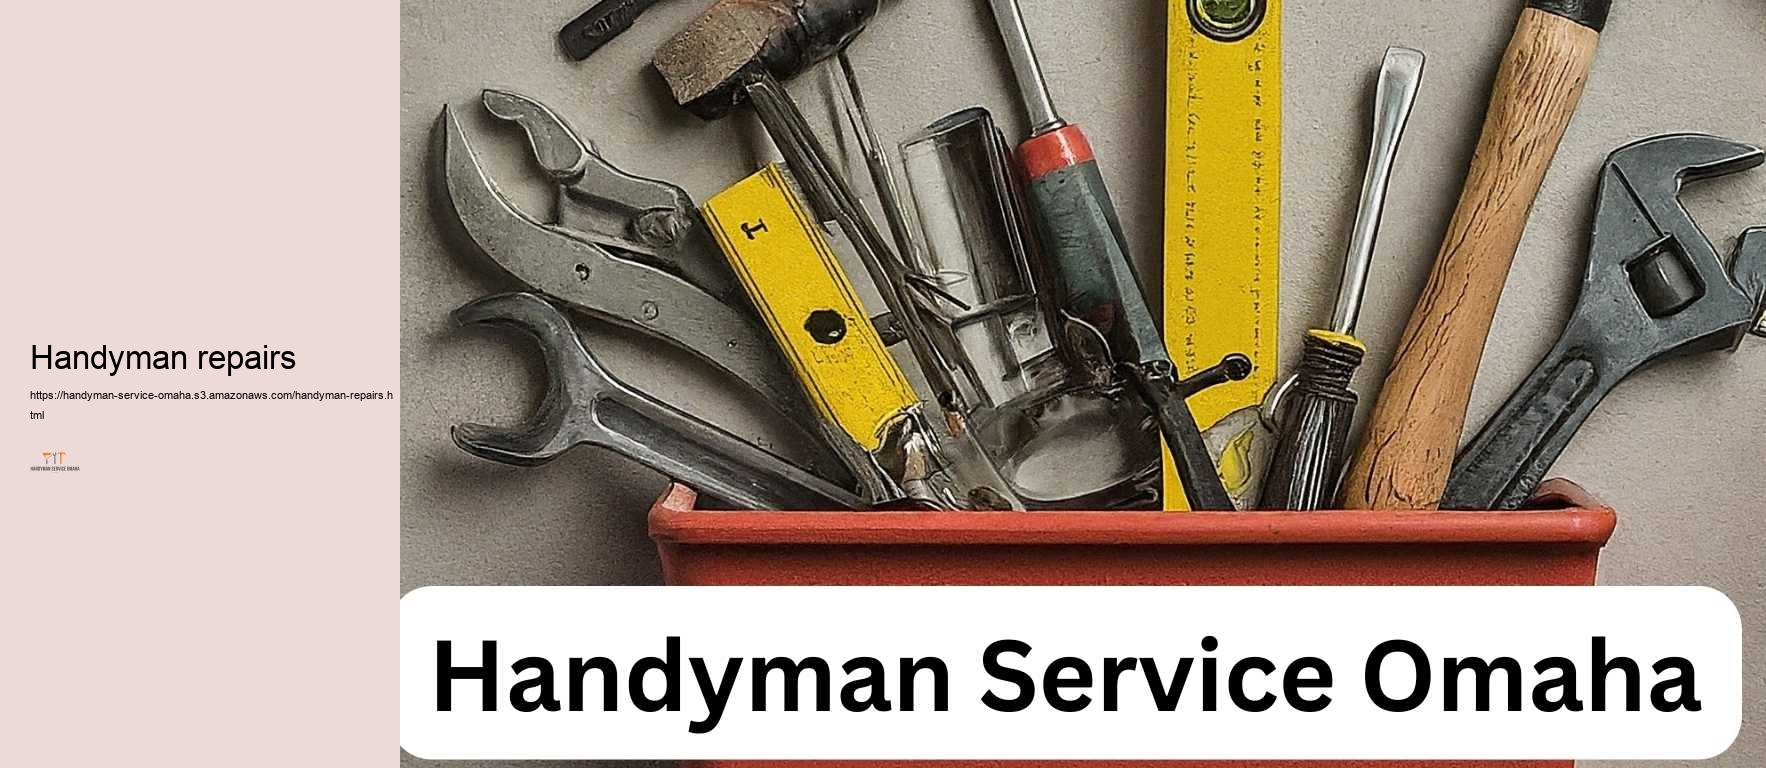 Handyman repairs